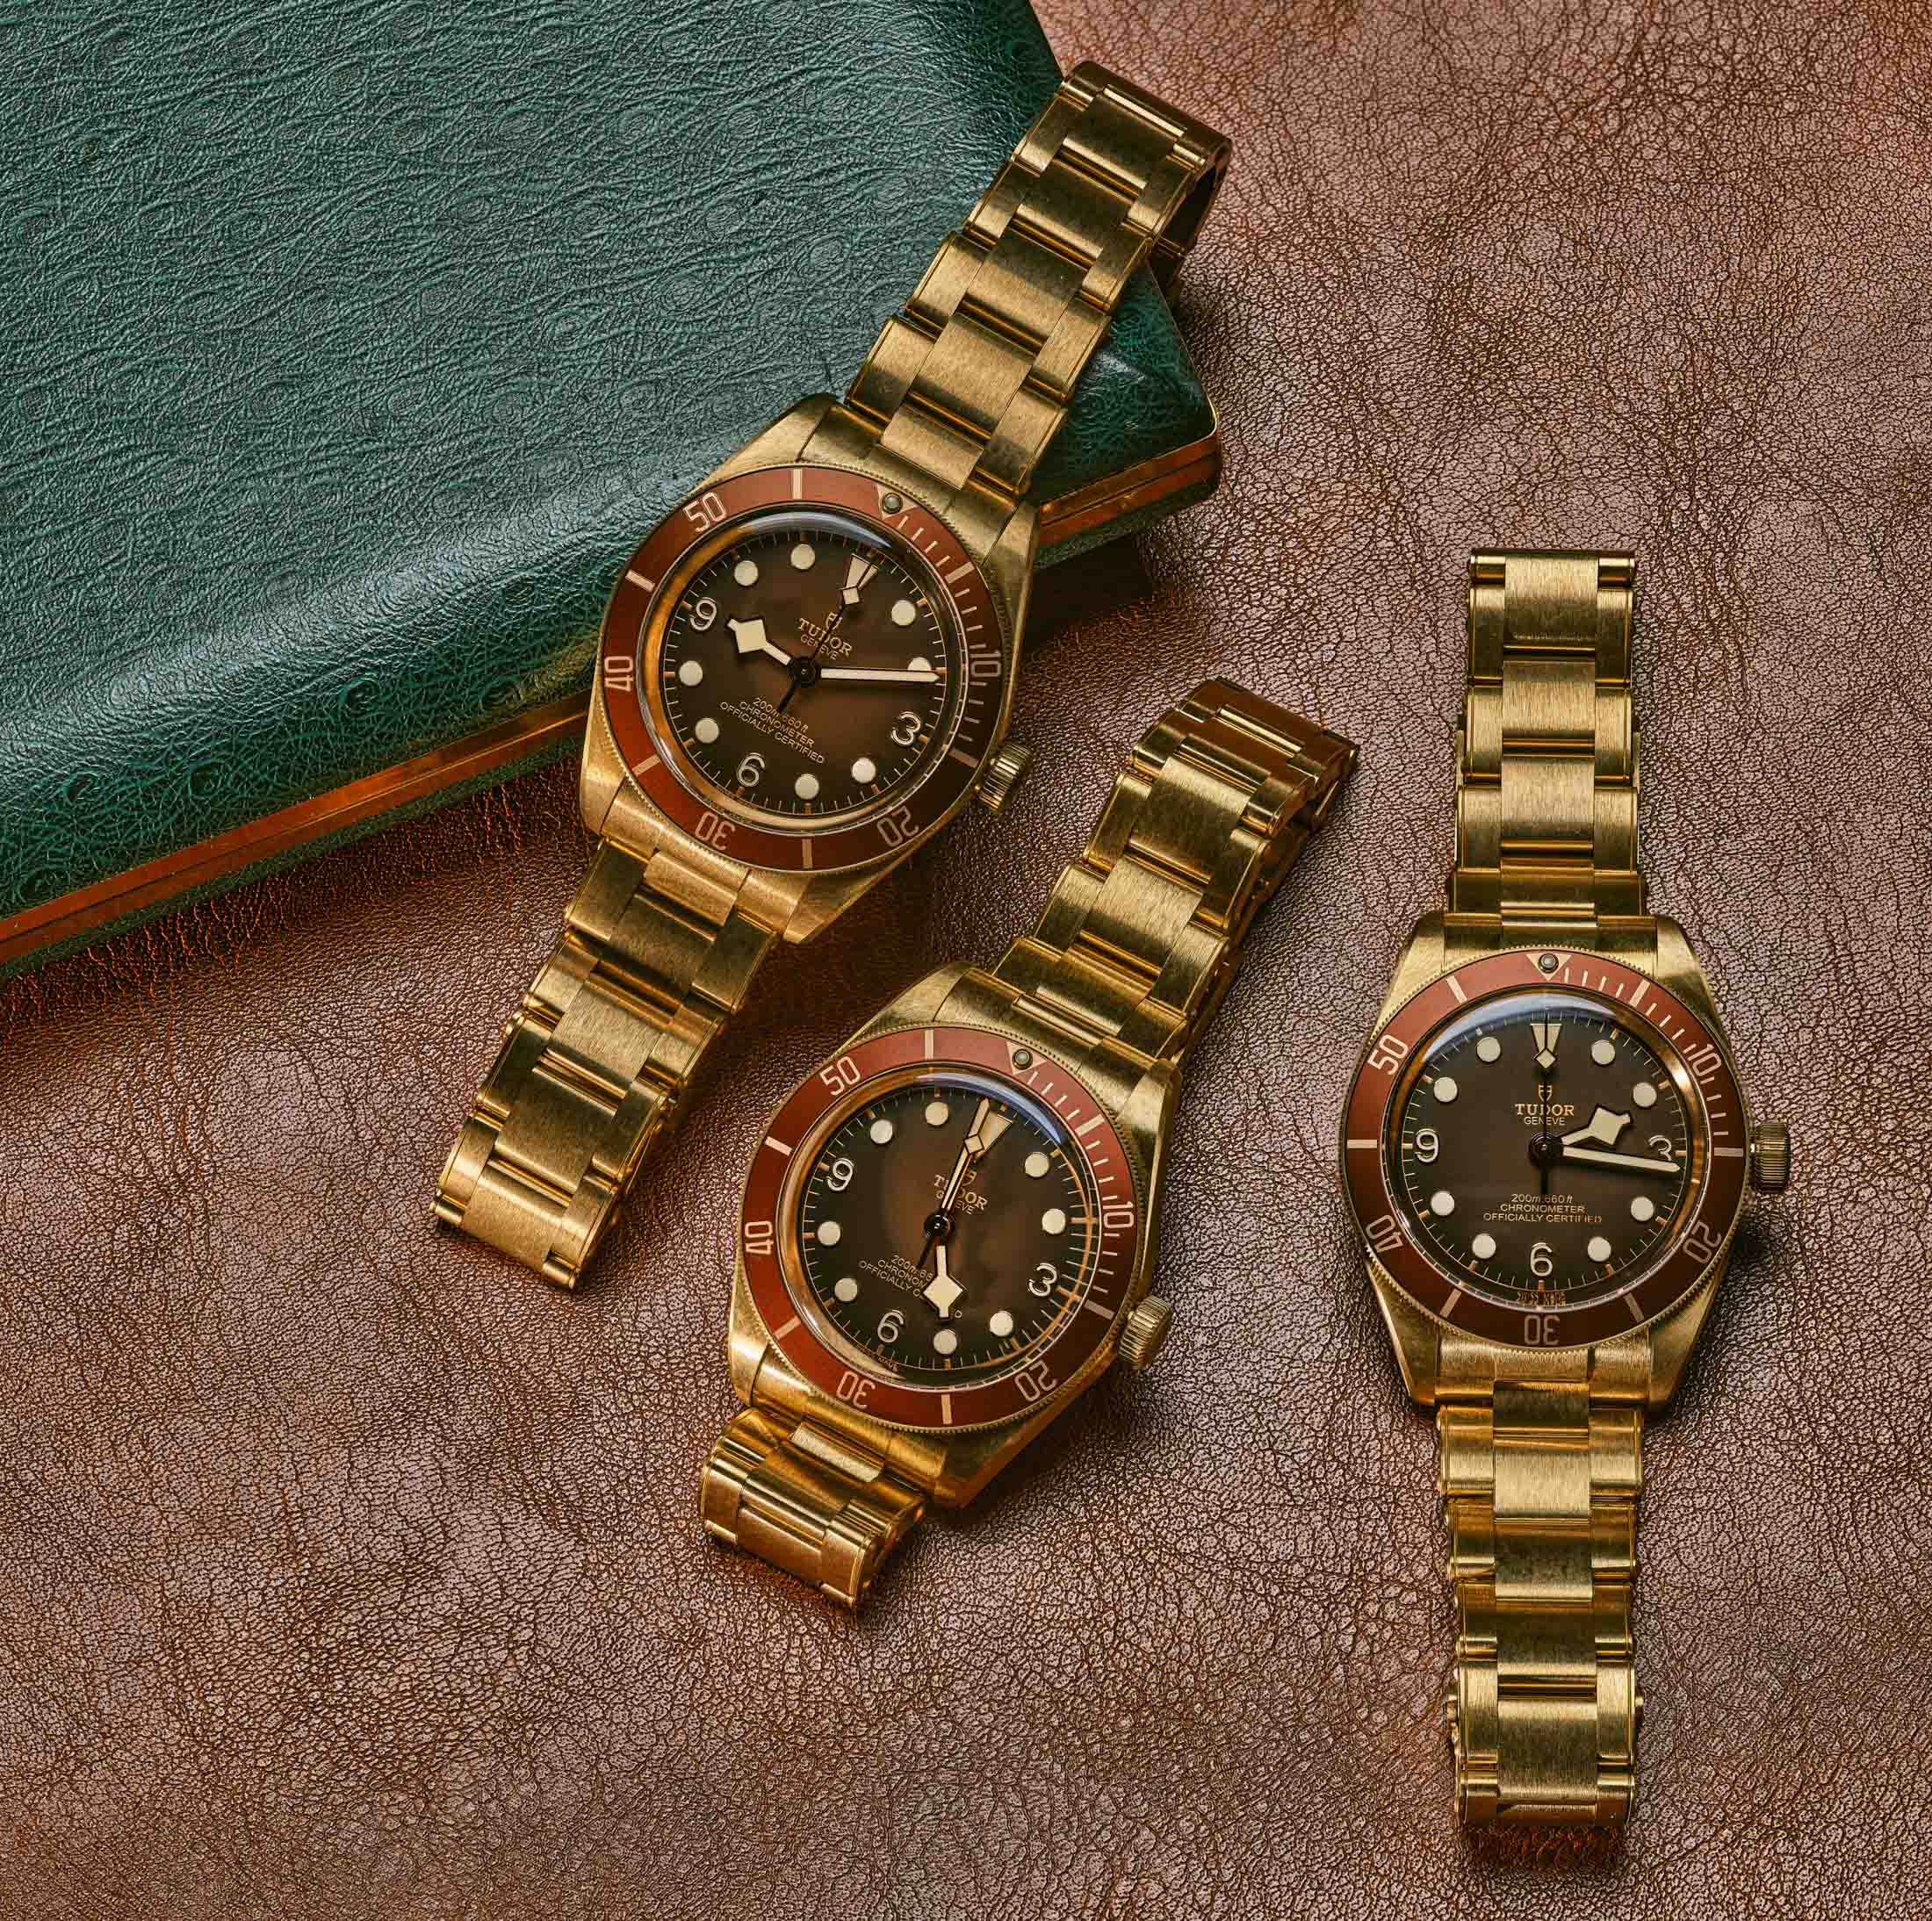 Buy AvanerVintage Bronze Leather Watches: Retro Steampunk Wide Cuff Analog  Quartz Wrist Watches for Men and Women Online at desertcartINDIA